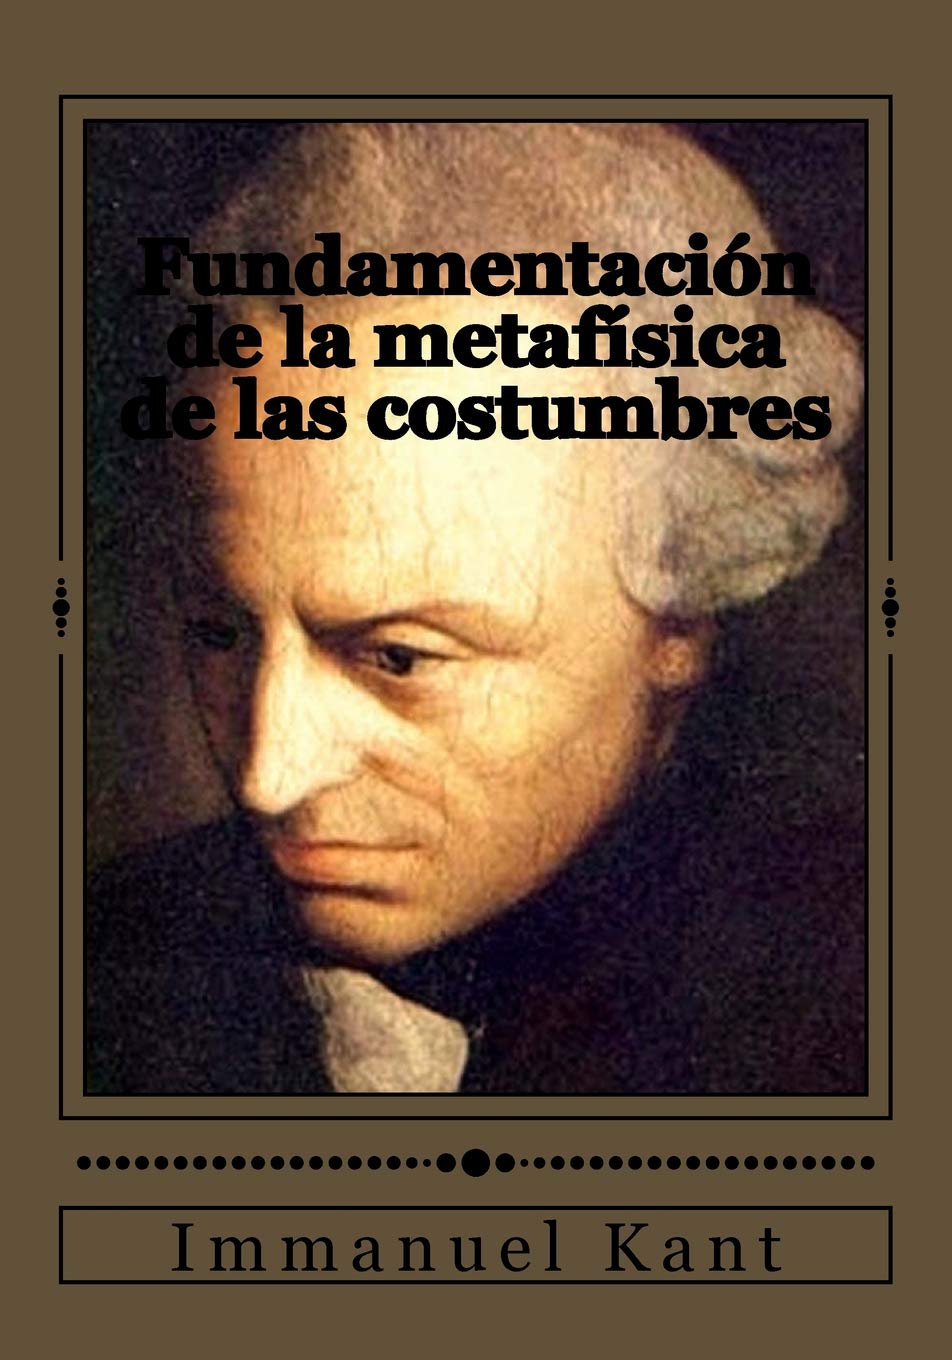 Invitación a la lectura VII: Fundamentación de la metafísica de las costumbres, Inmanuel Kant.